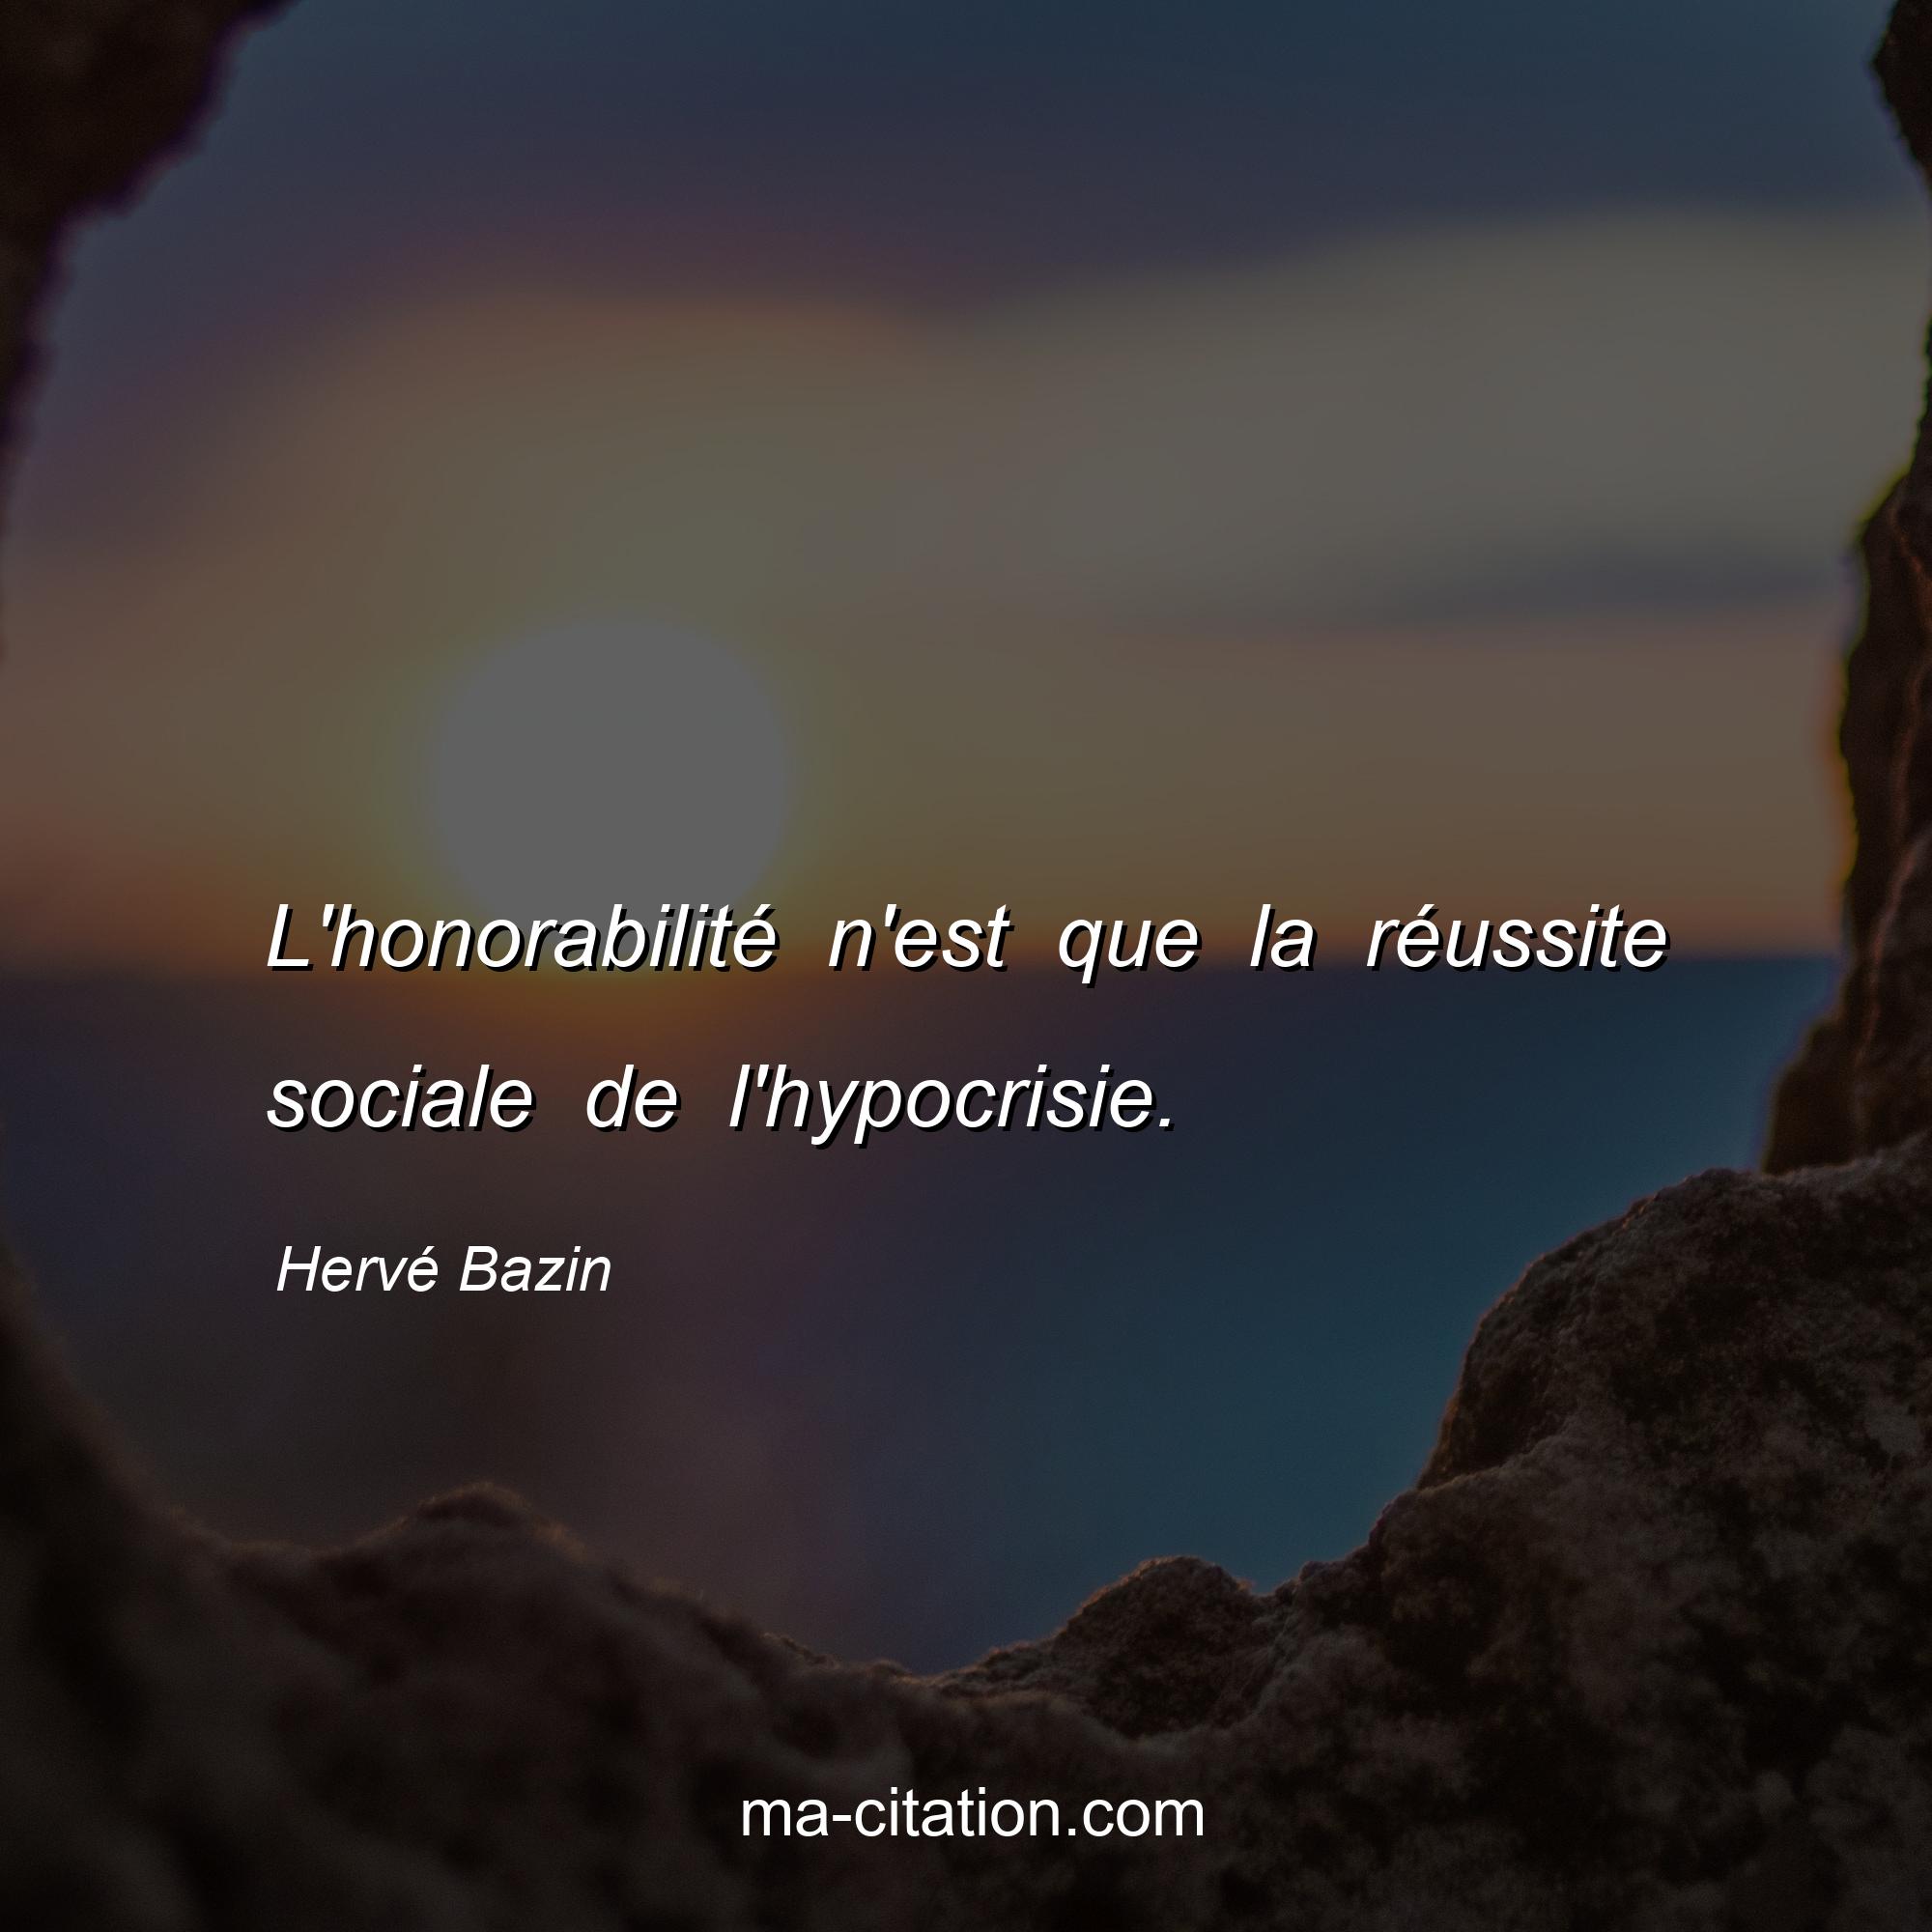 Hervé Bazin : L'honorabilité n'est que la réussite sociale de l'hypocrisie.